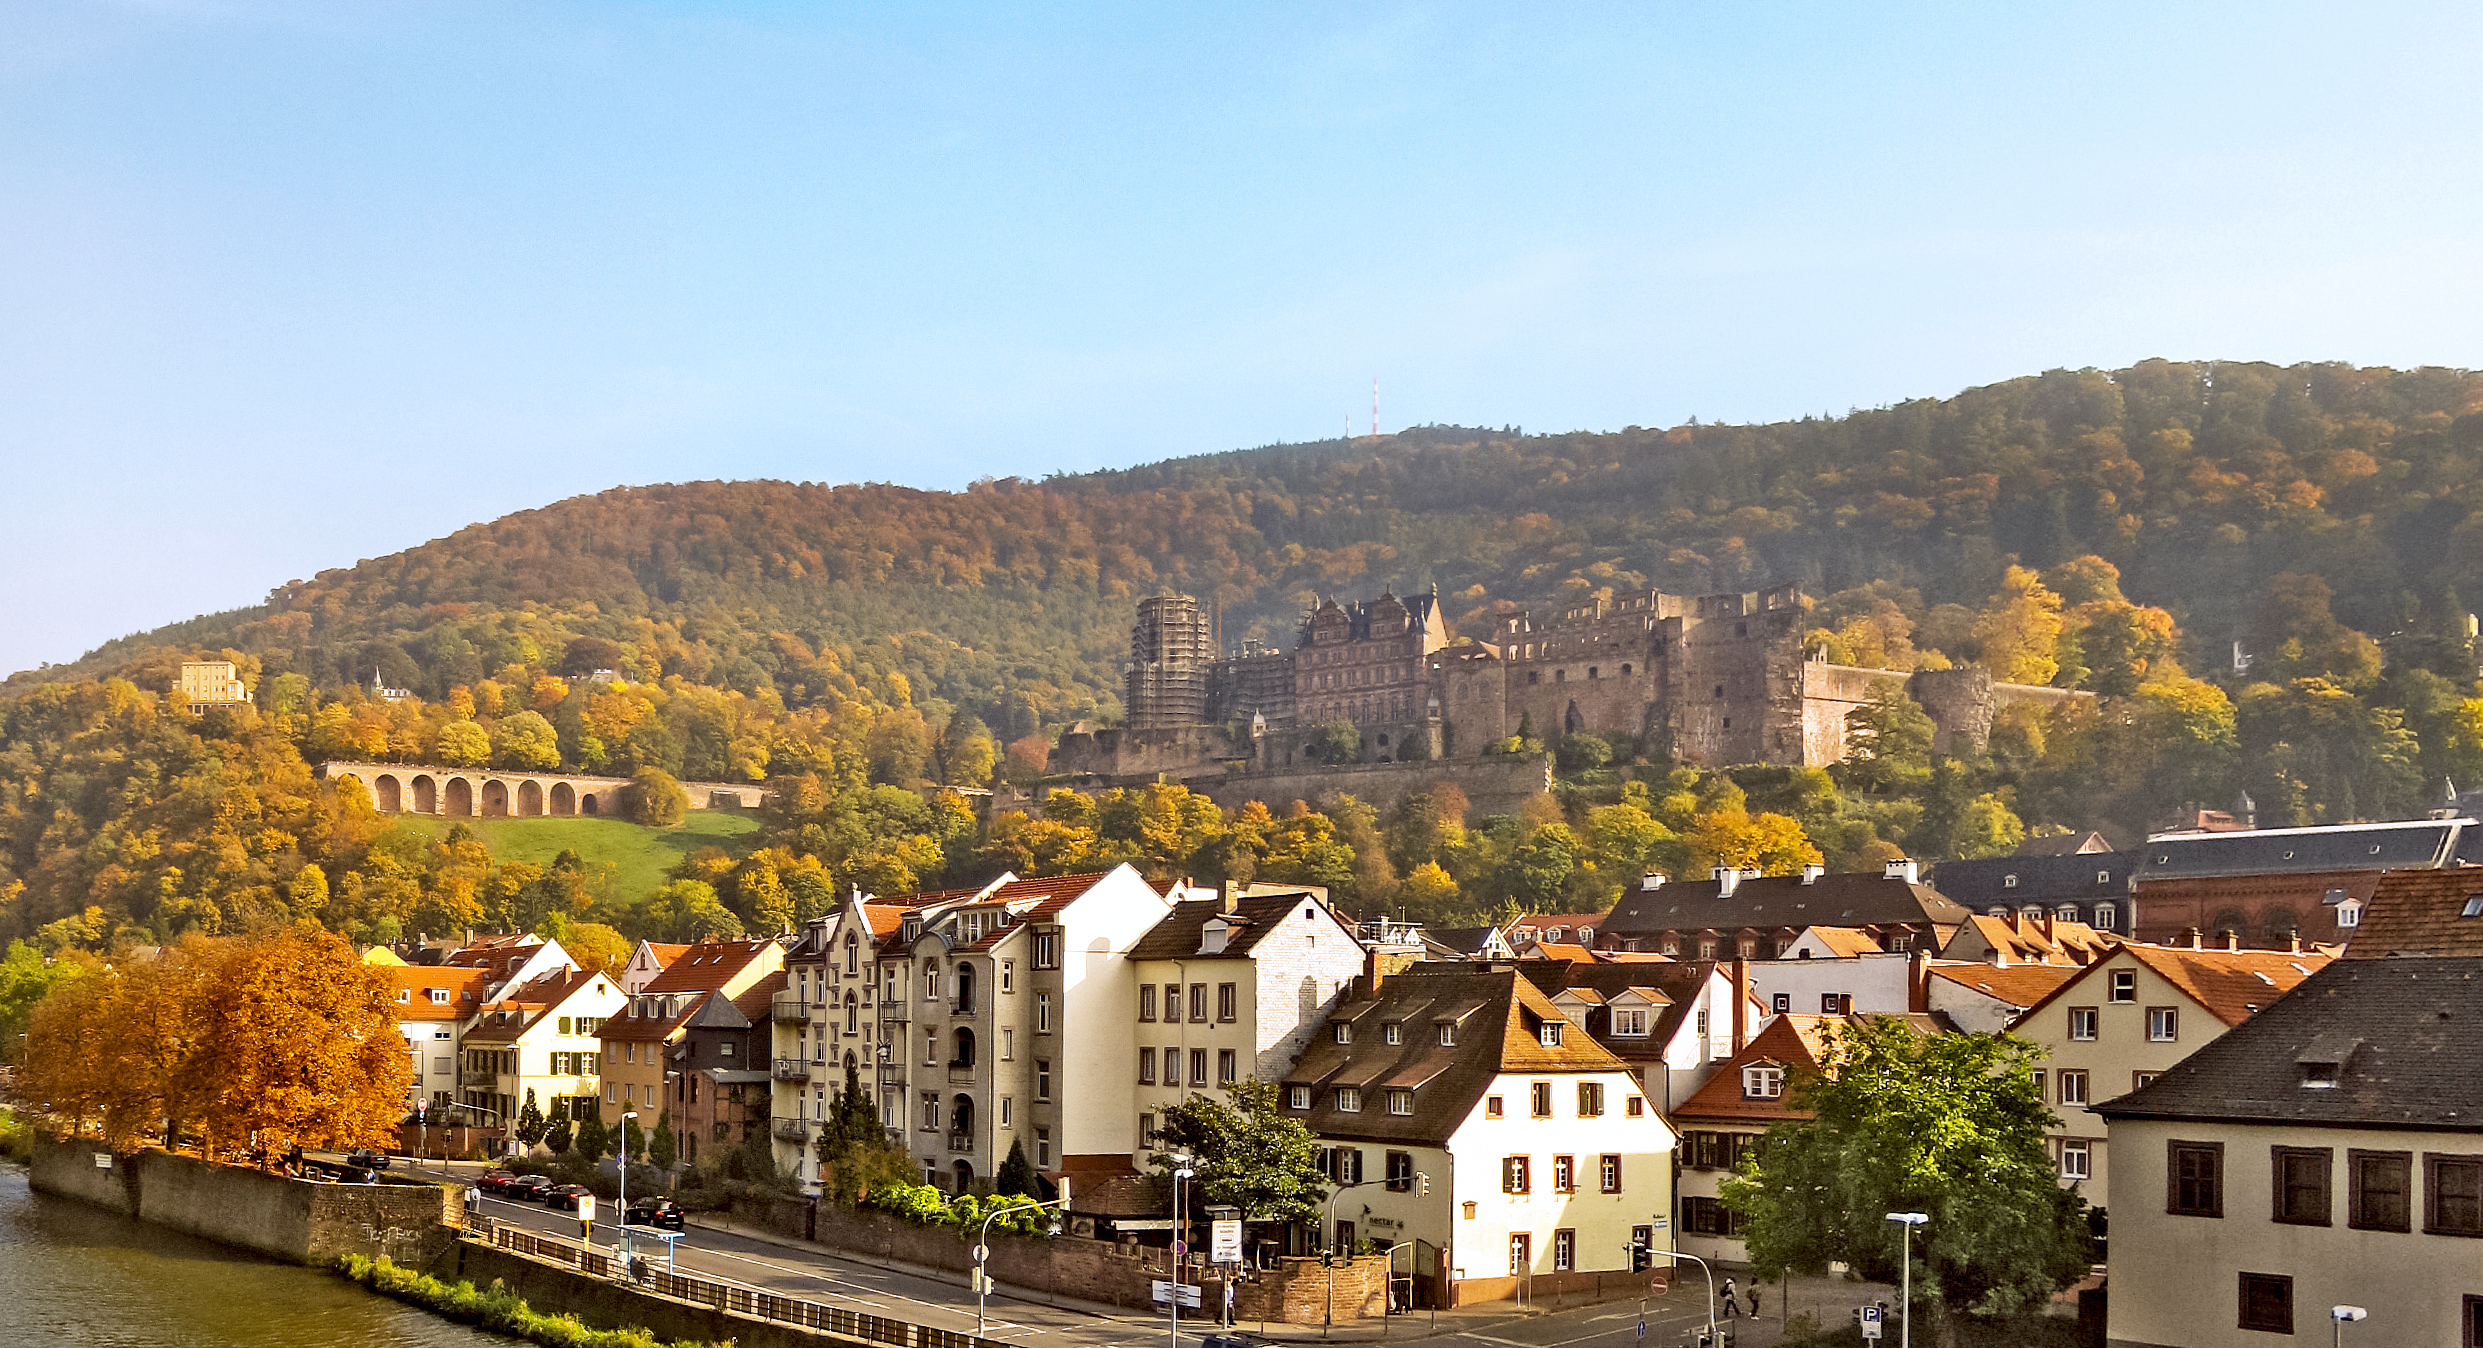 Das berühmte Schloss in Heidelberg, Deutschland. Blick von der Brücke darunter